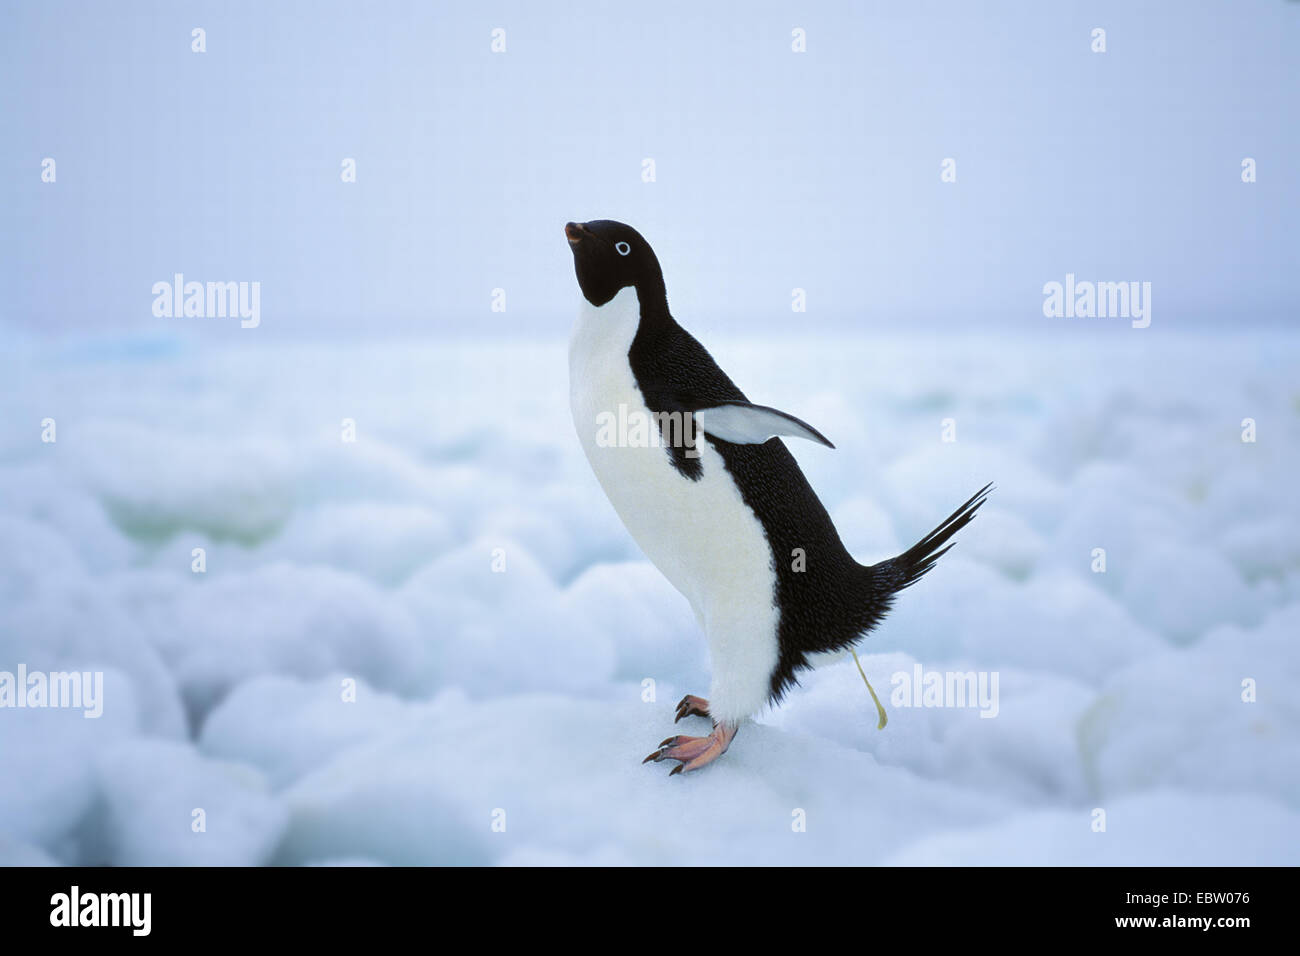 adelie penguin (Pygoscelis adeliae), defecating, Antarctica Stock Photo